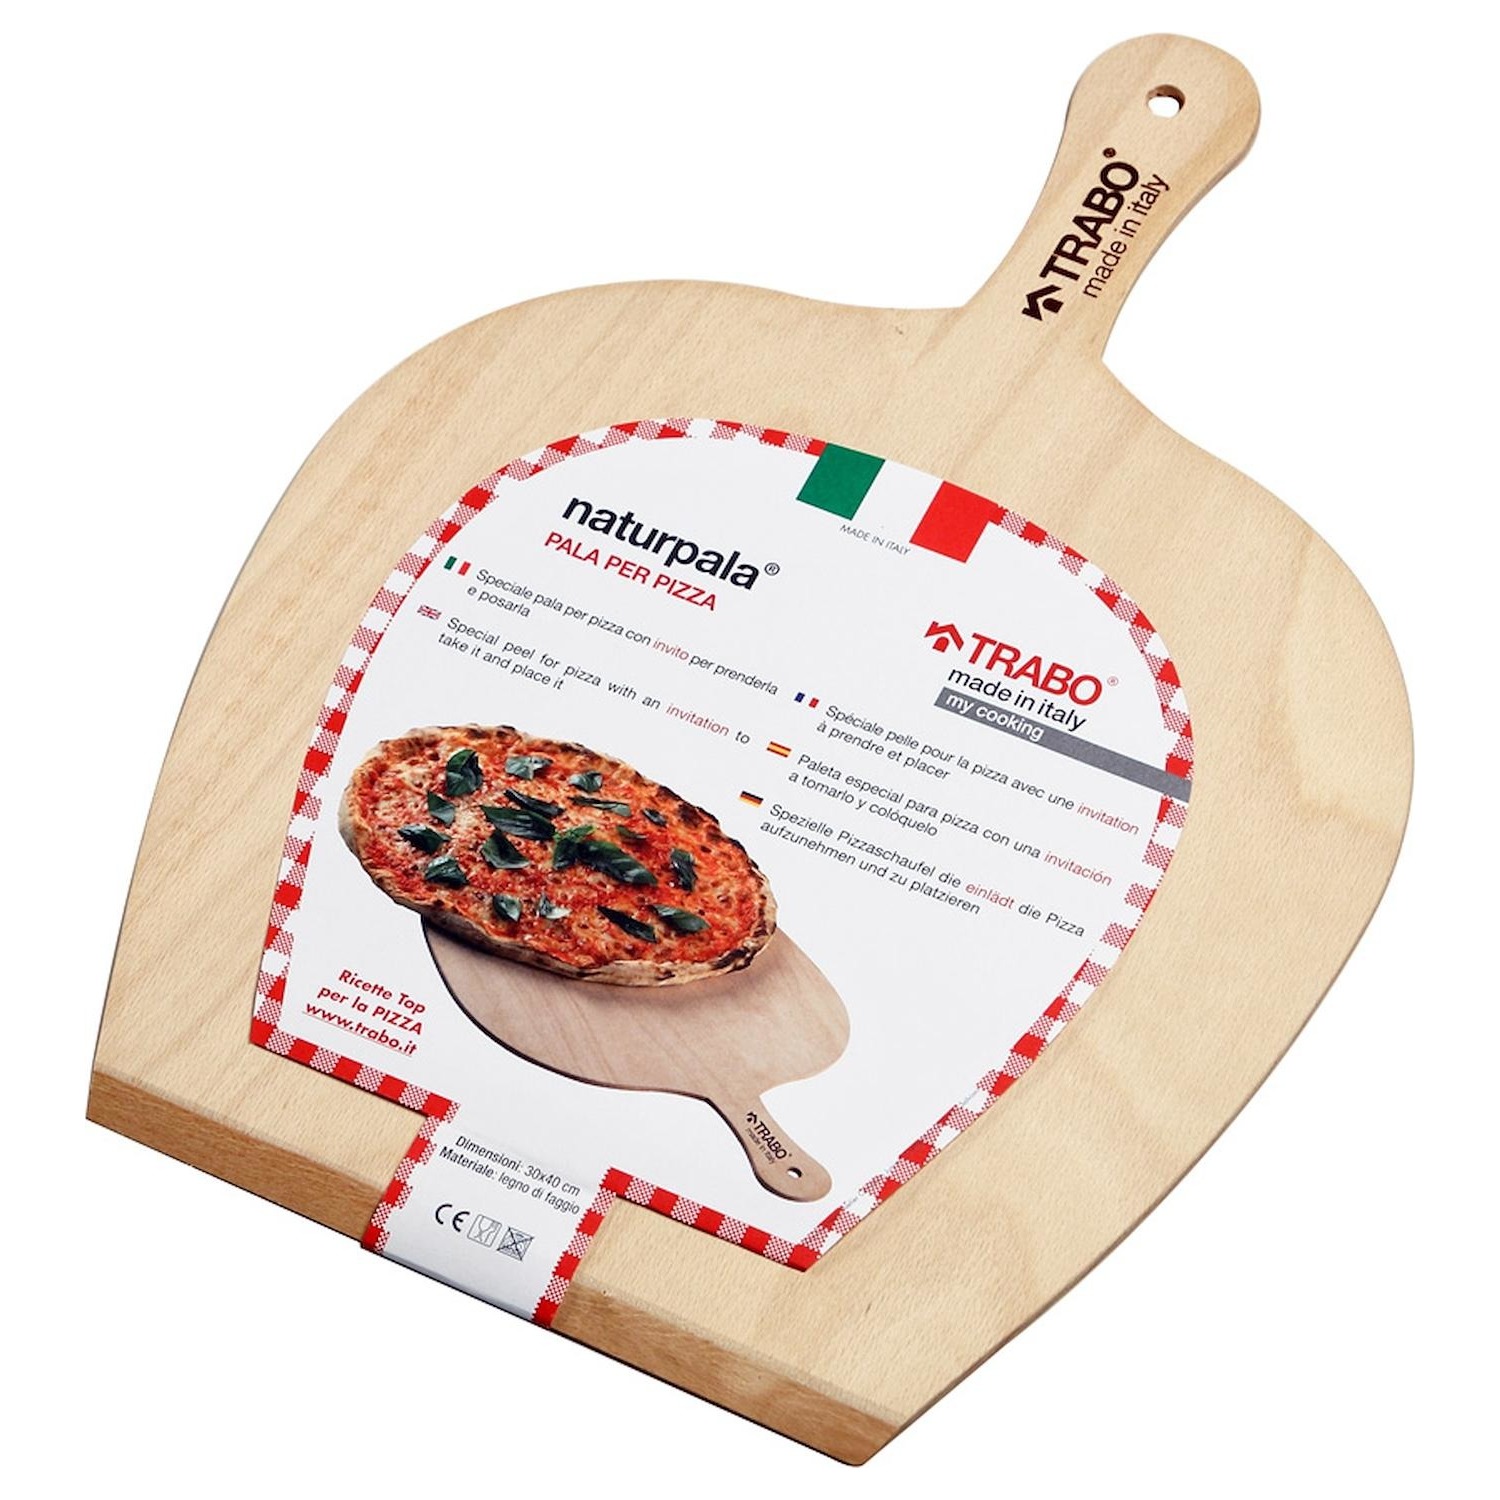 Immagine per Pala per pizza Trabo BPALA Naturpala legno di faggio dimensioni 30cm x 40cm da DIMOStore